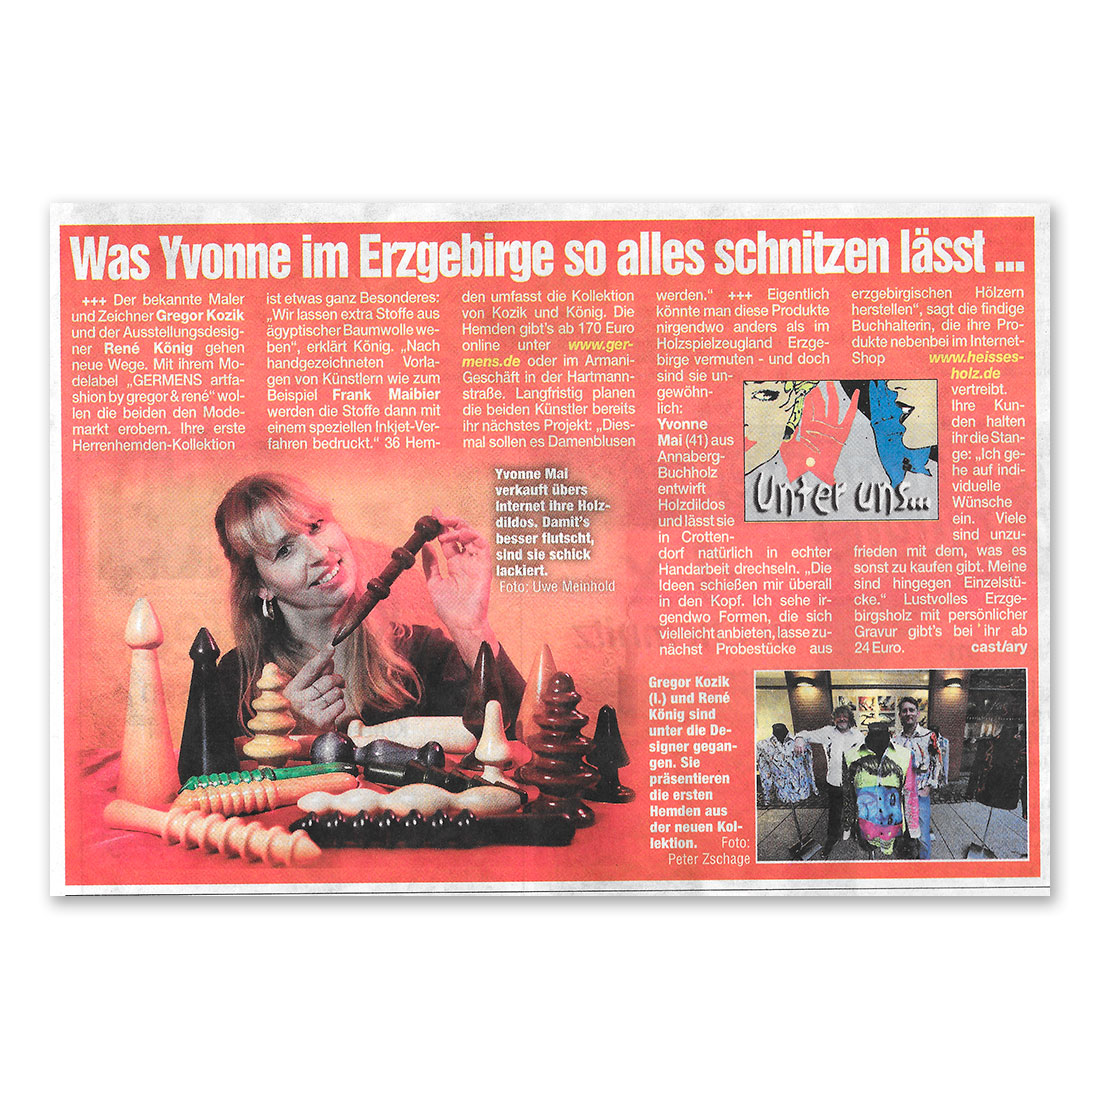 GERMENS artfashion - Morgenpost Chemnitz - 03.12.2013